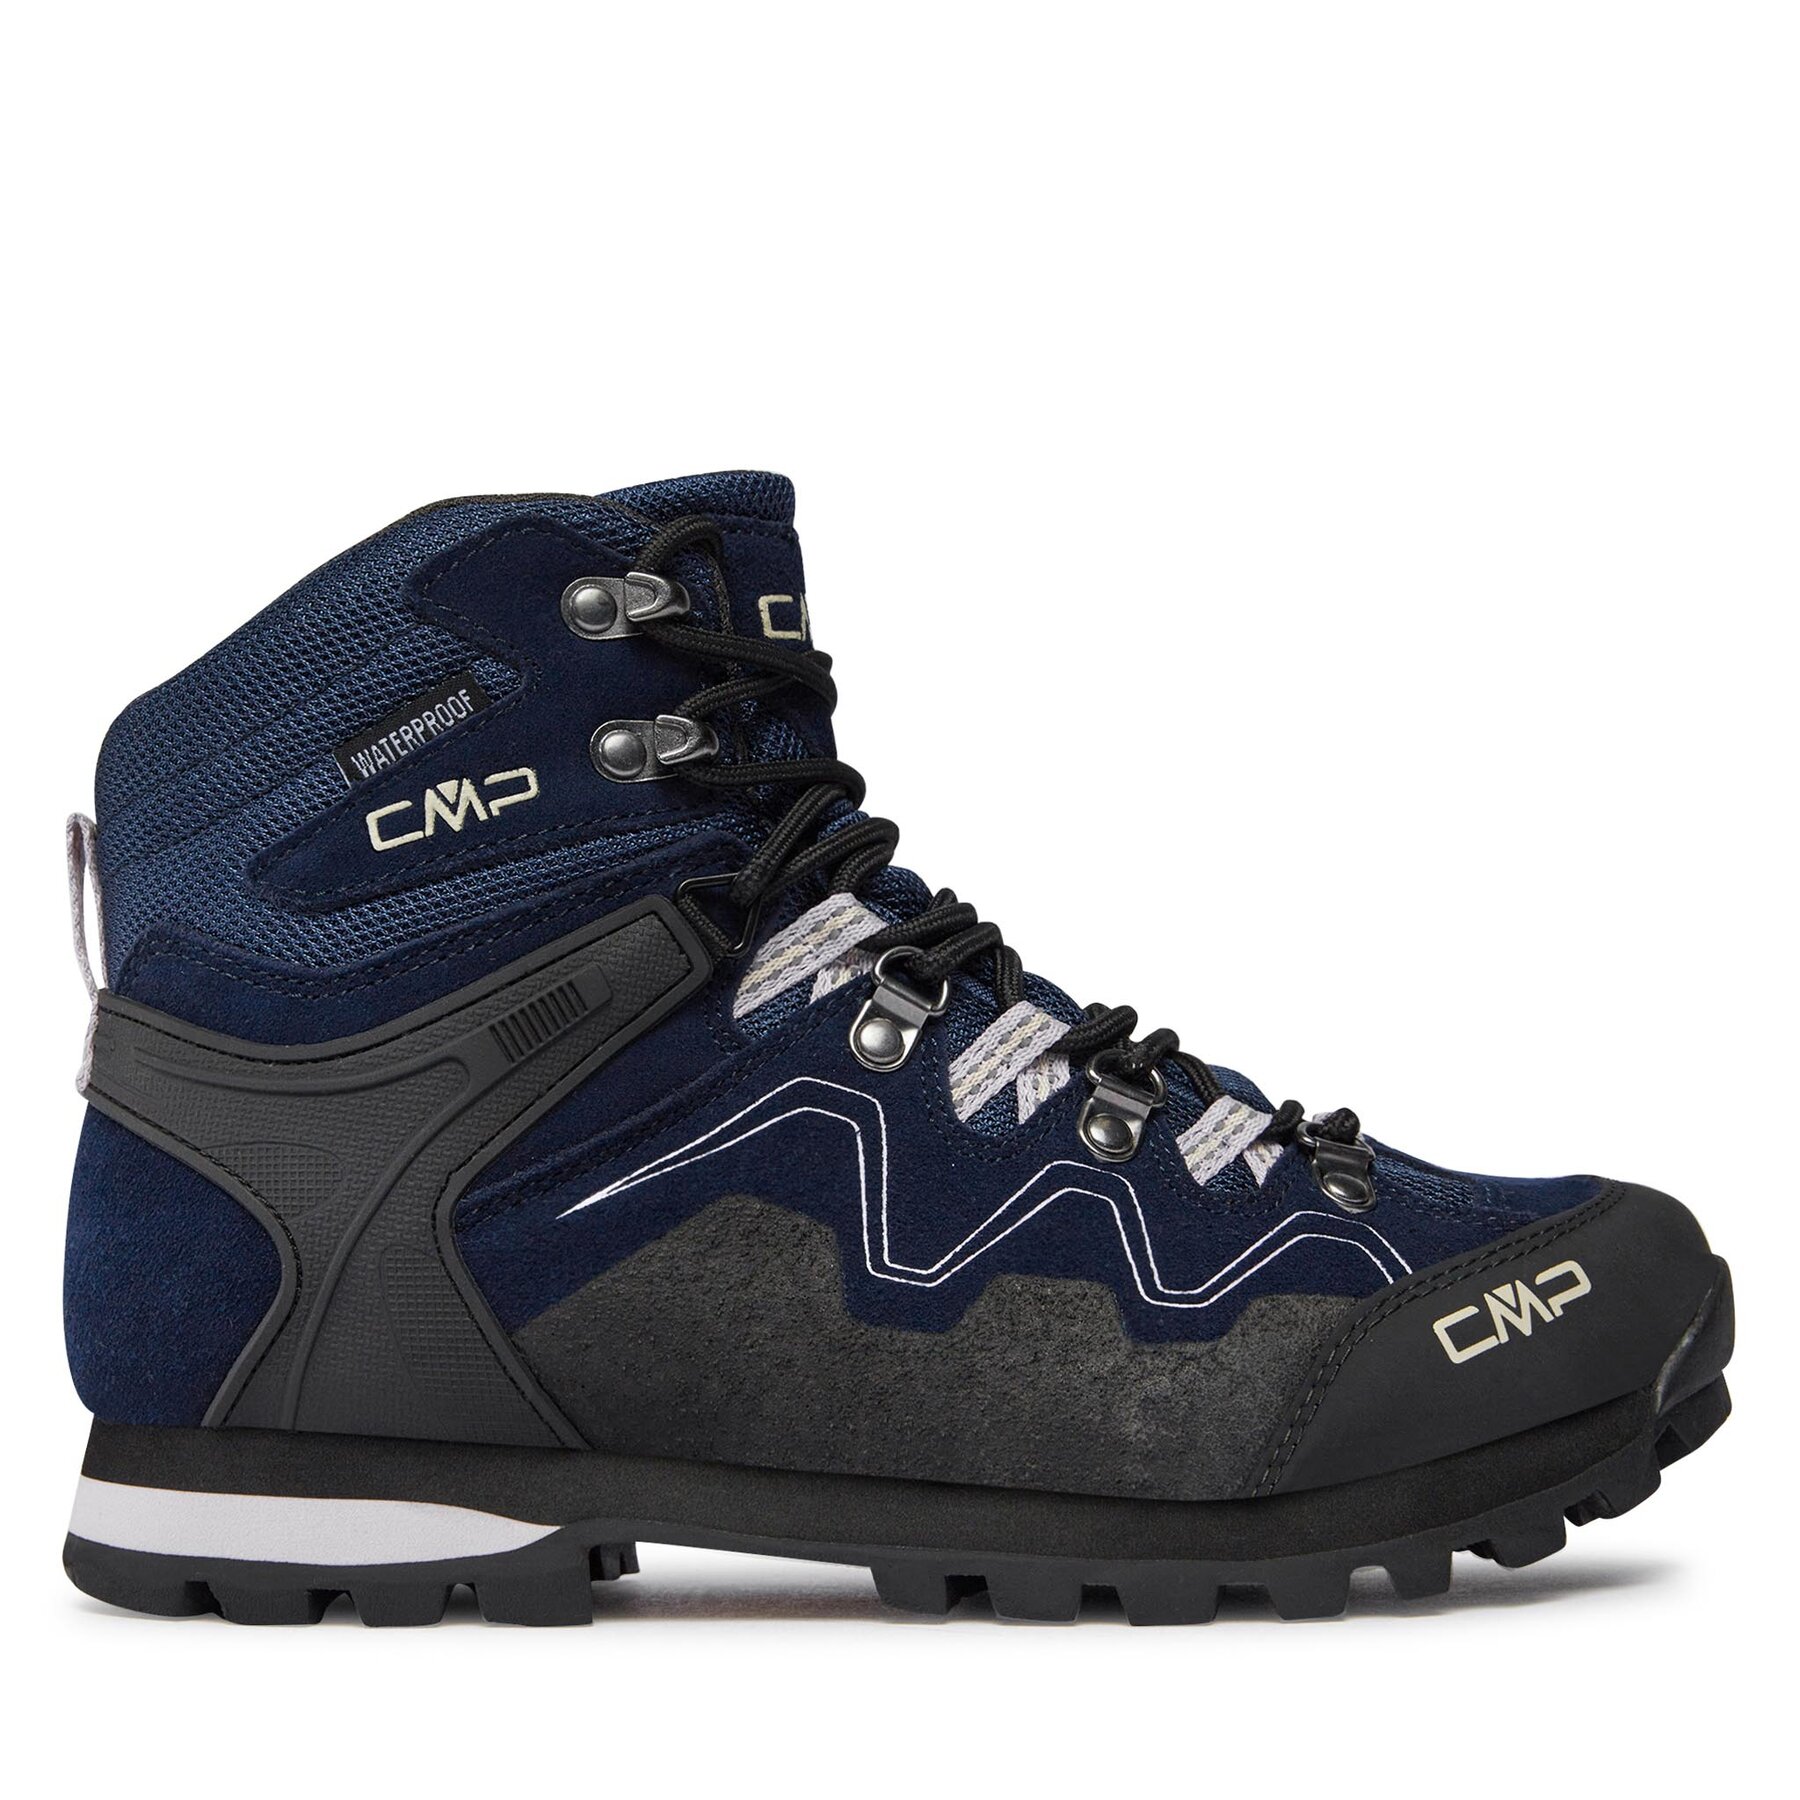 Trekkingschuhe CMP Athunis Mid Wmn Trekking Shoe Wp 31Q4976 Blue Ink/Lilac 04MP von CMP